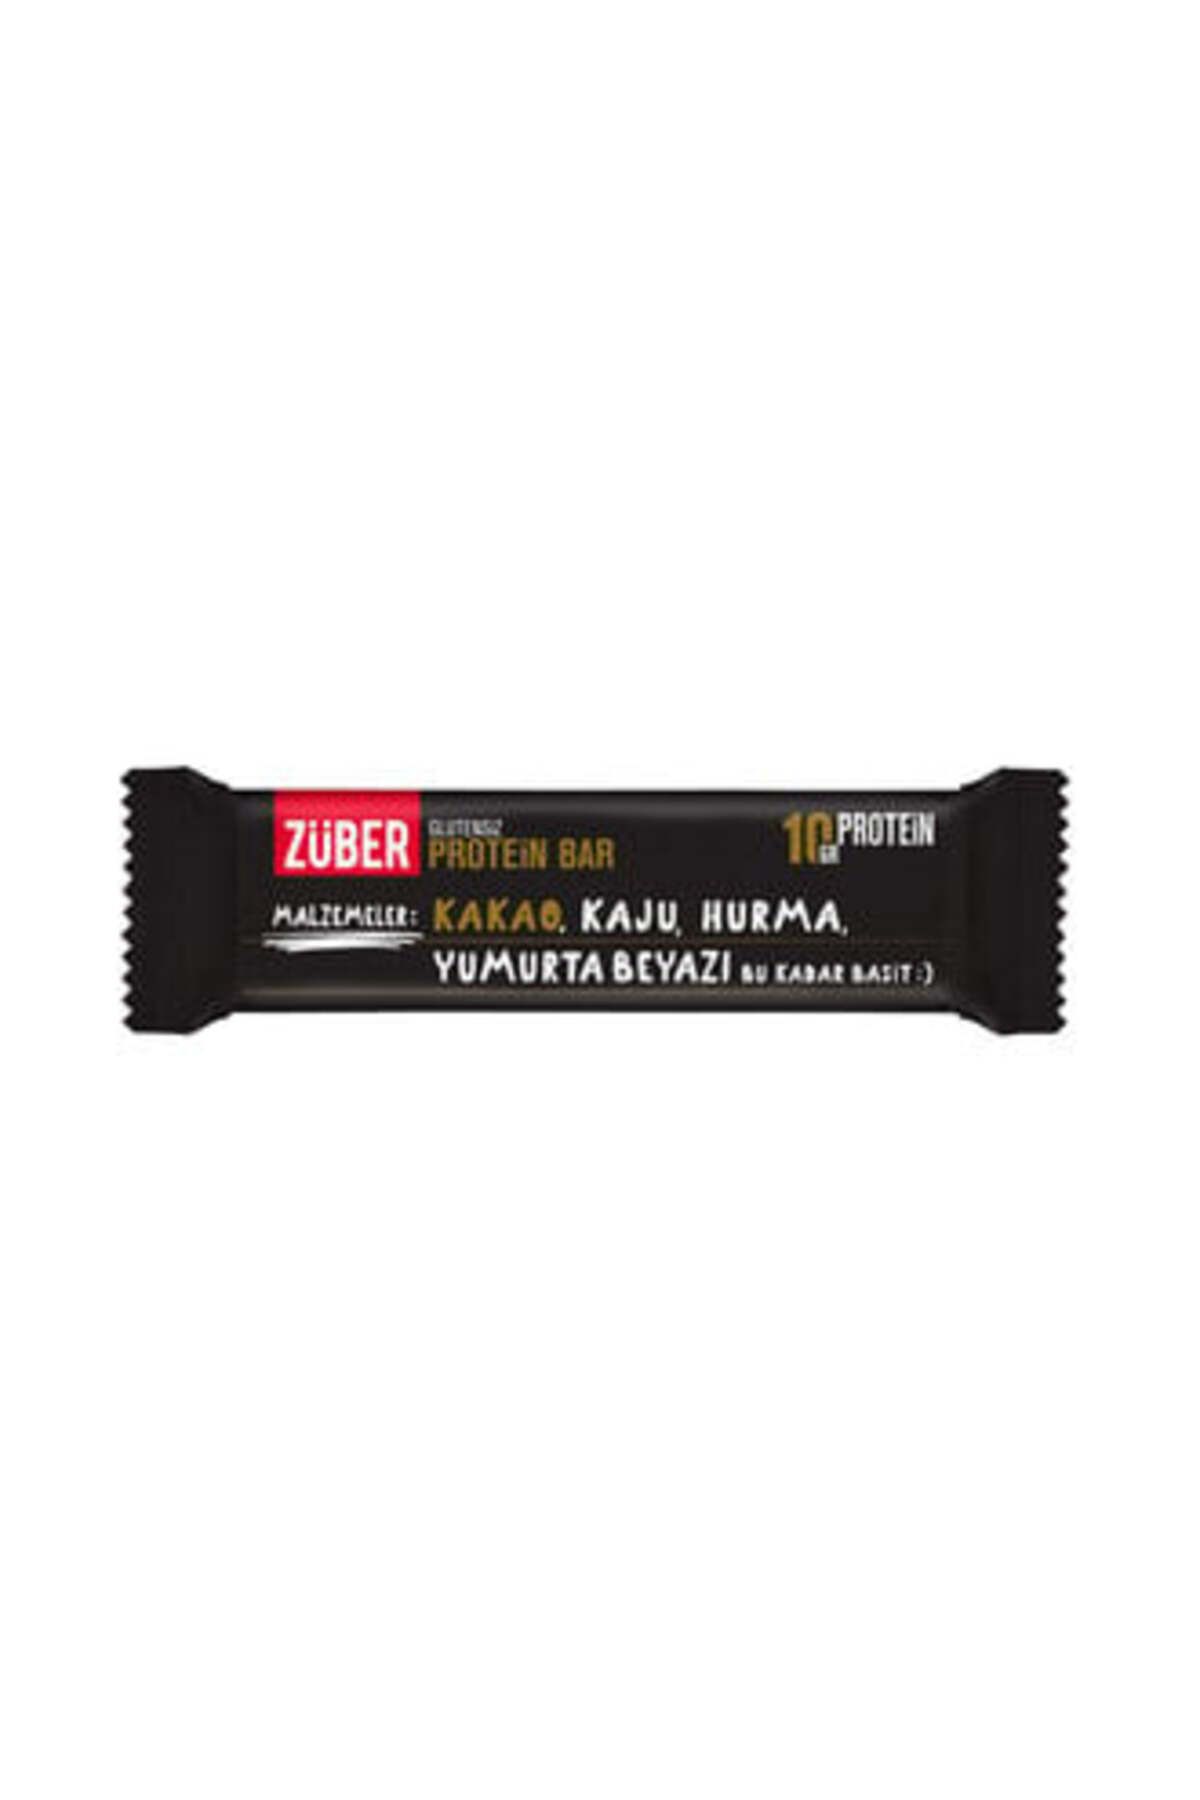 Züber Glutensiz Protein Barı Kakaolu 35 Gr ( 2 ADET )